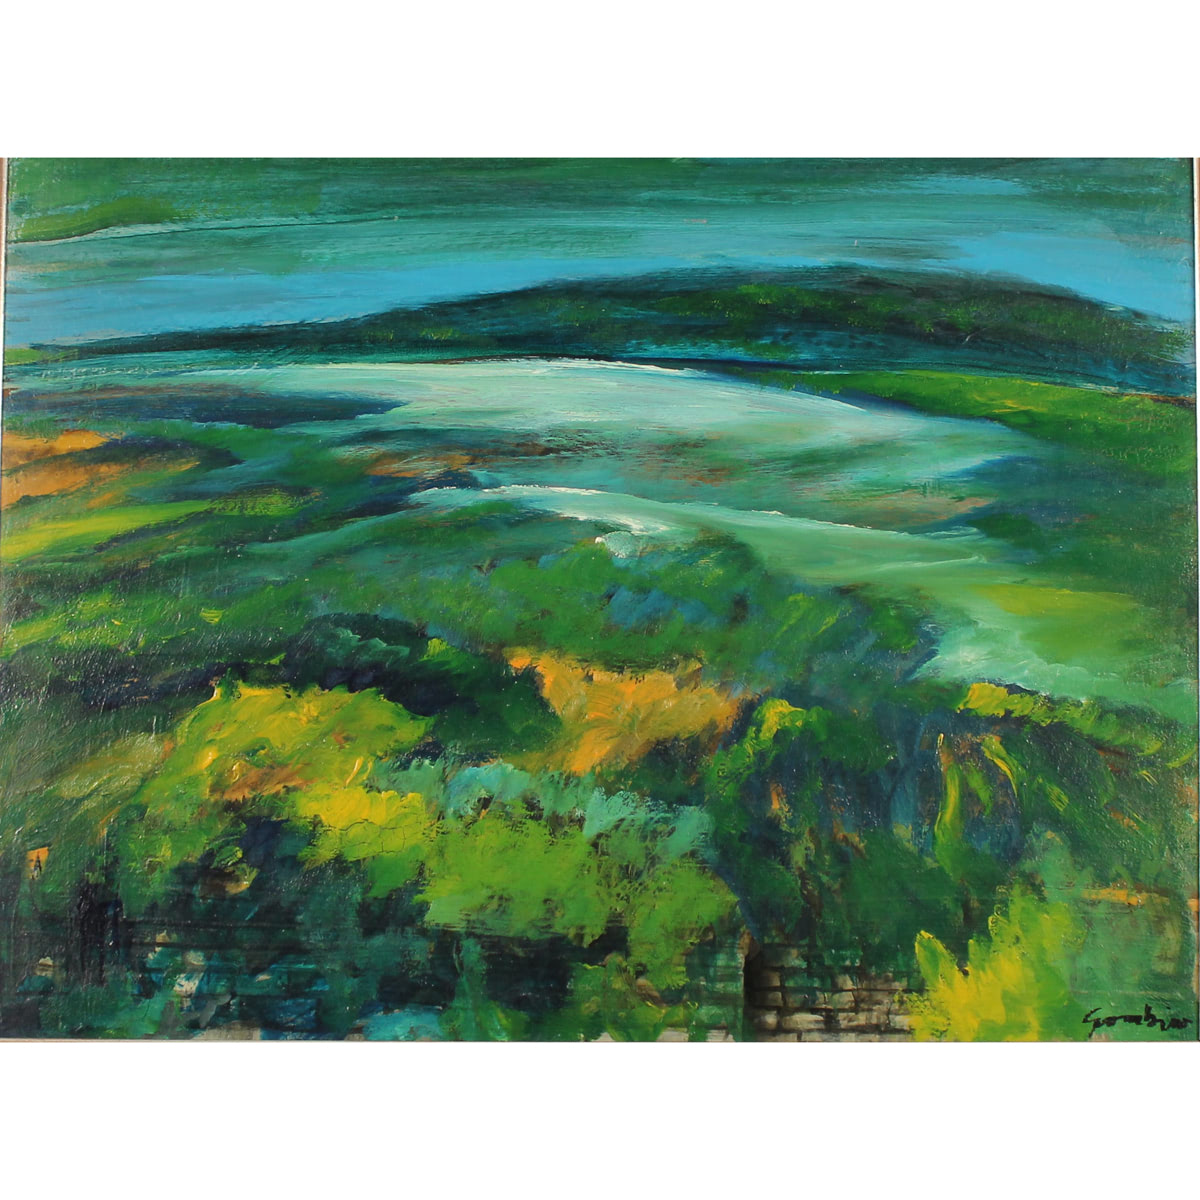 Pippo Gambino (1935/2004) "Paesaggio" - "Landscape"